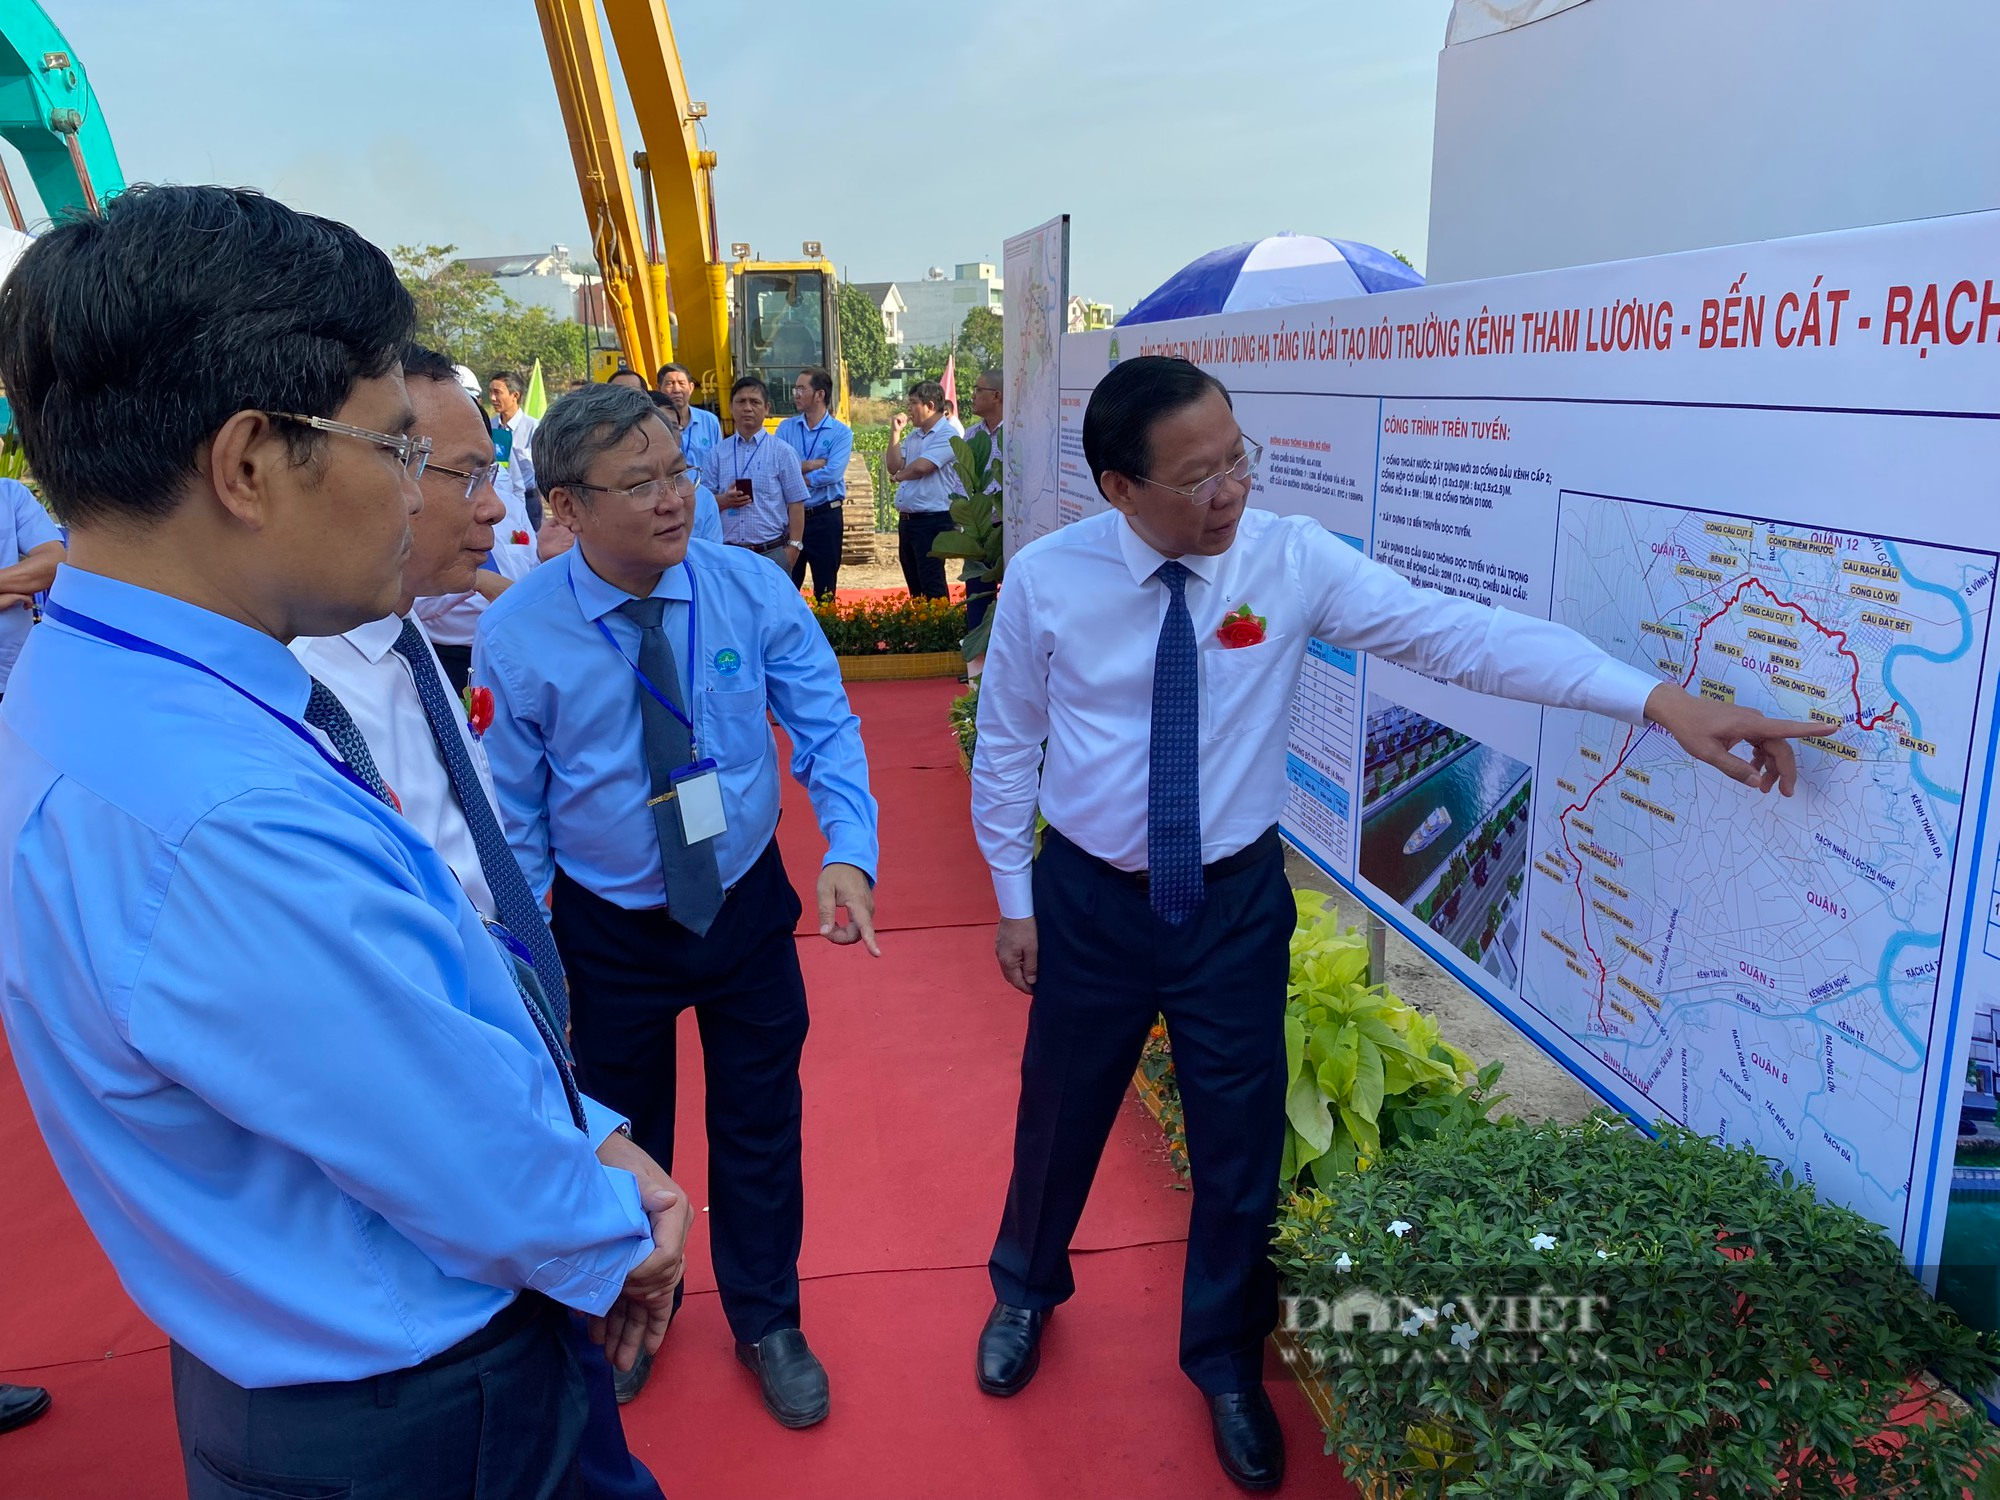 TP.HCM đang xây dựng, cải tạo môi trường kênh Tham Lương - Bến Cát – Nước Lên với kinh phí 8.200 tỷ đồng - Ảnh 3.